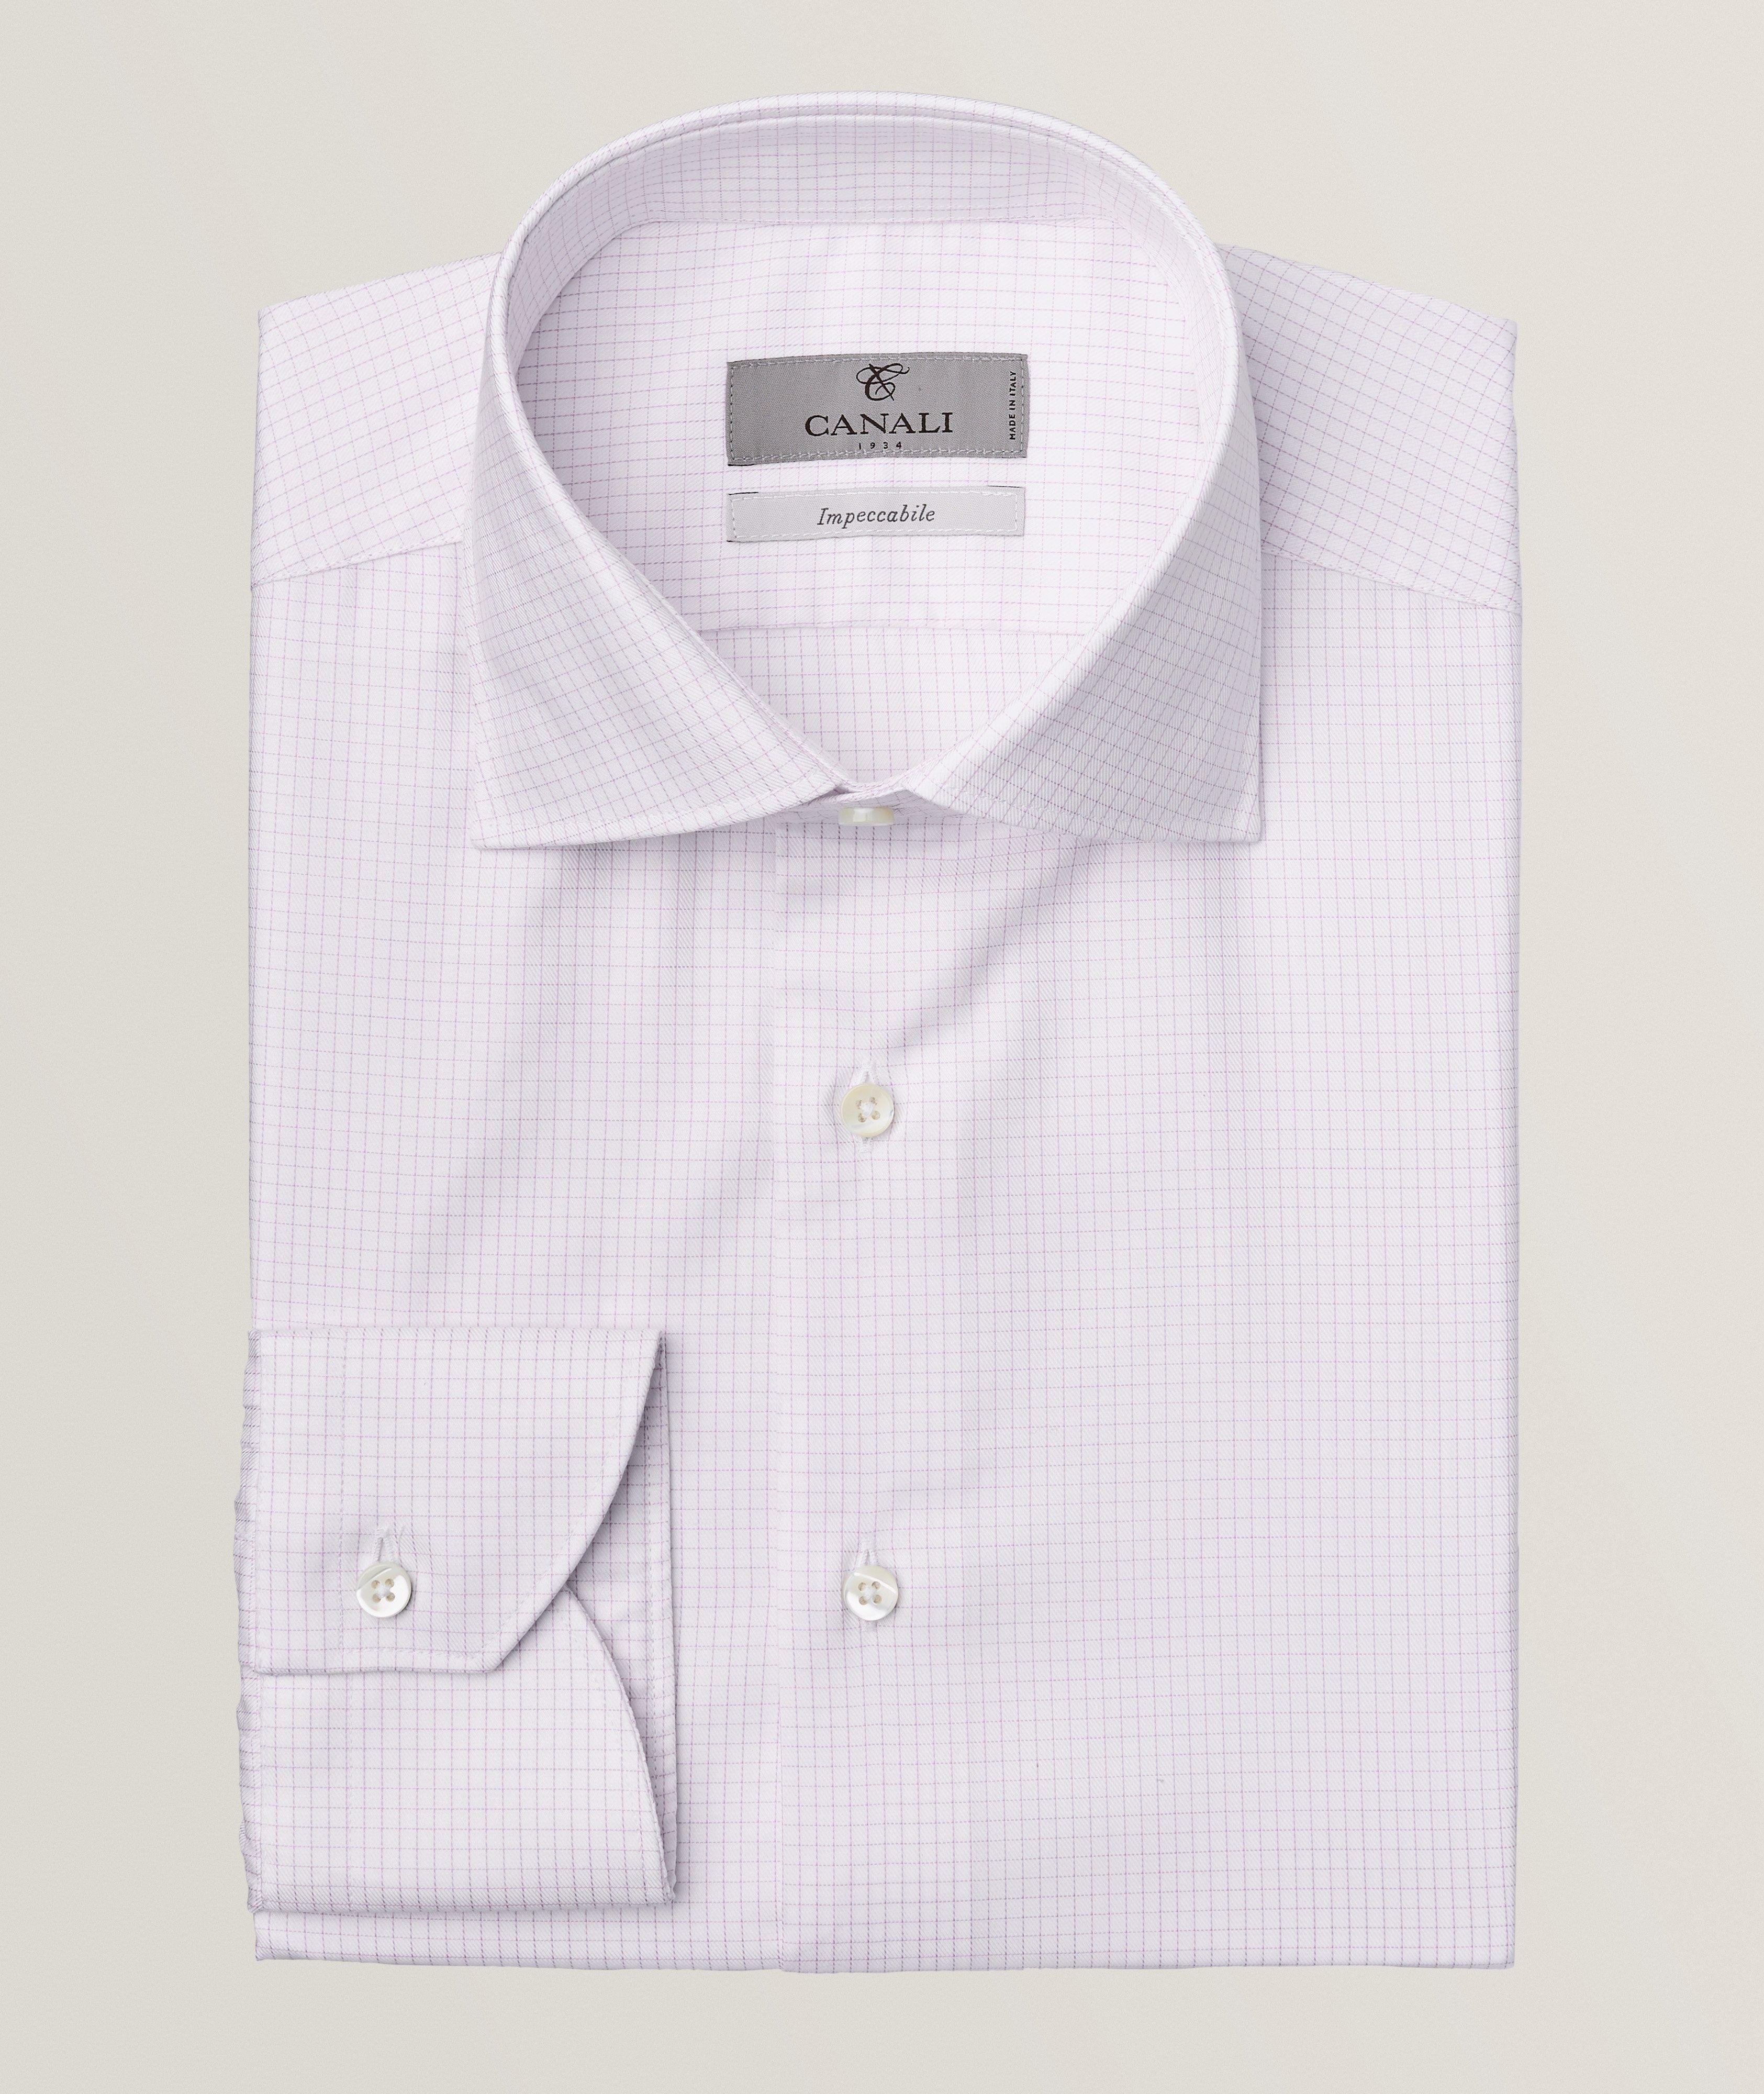 Chemise habillée en tissu Impeccabile à motif quadrillé image 0